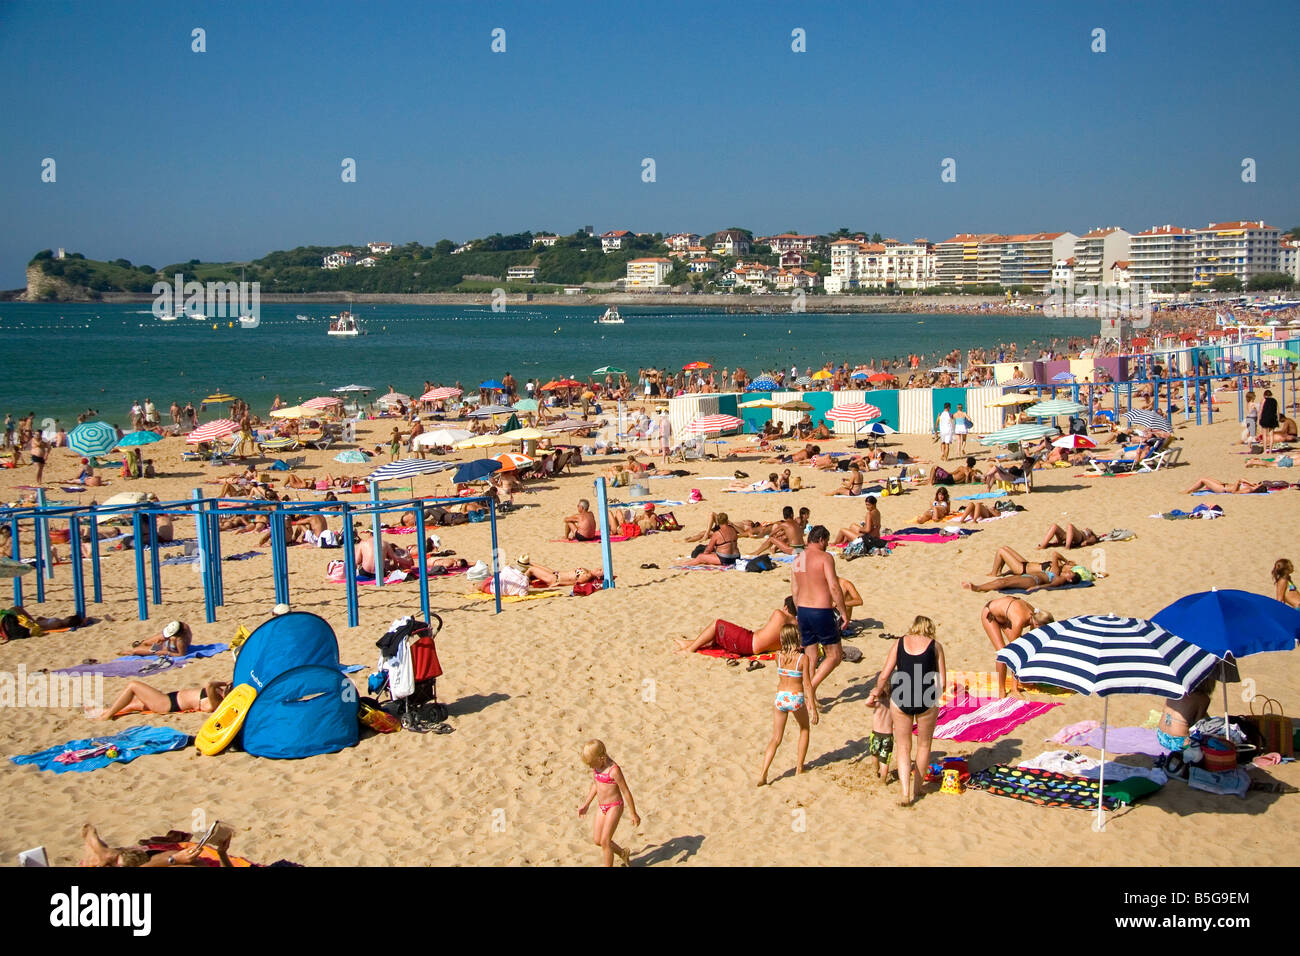 Scena di spiaggia nella baia di Saint Jean de Luz Pirenei Atlantiques Paesi Baschi francesi a sud-ovest della Francia Foto Stock